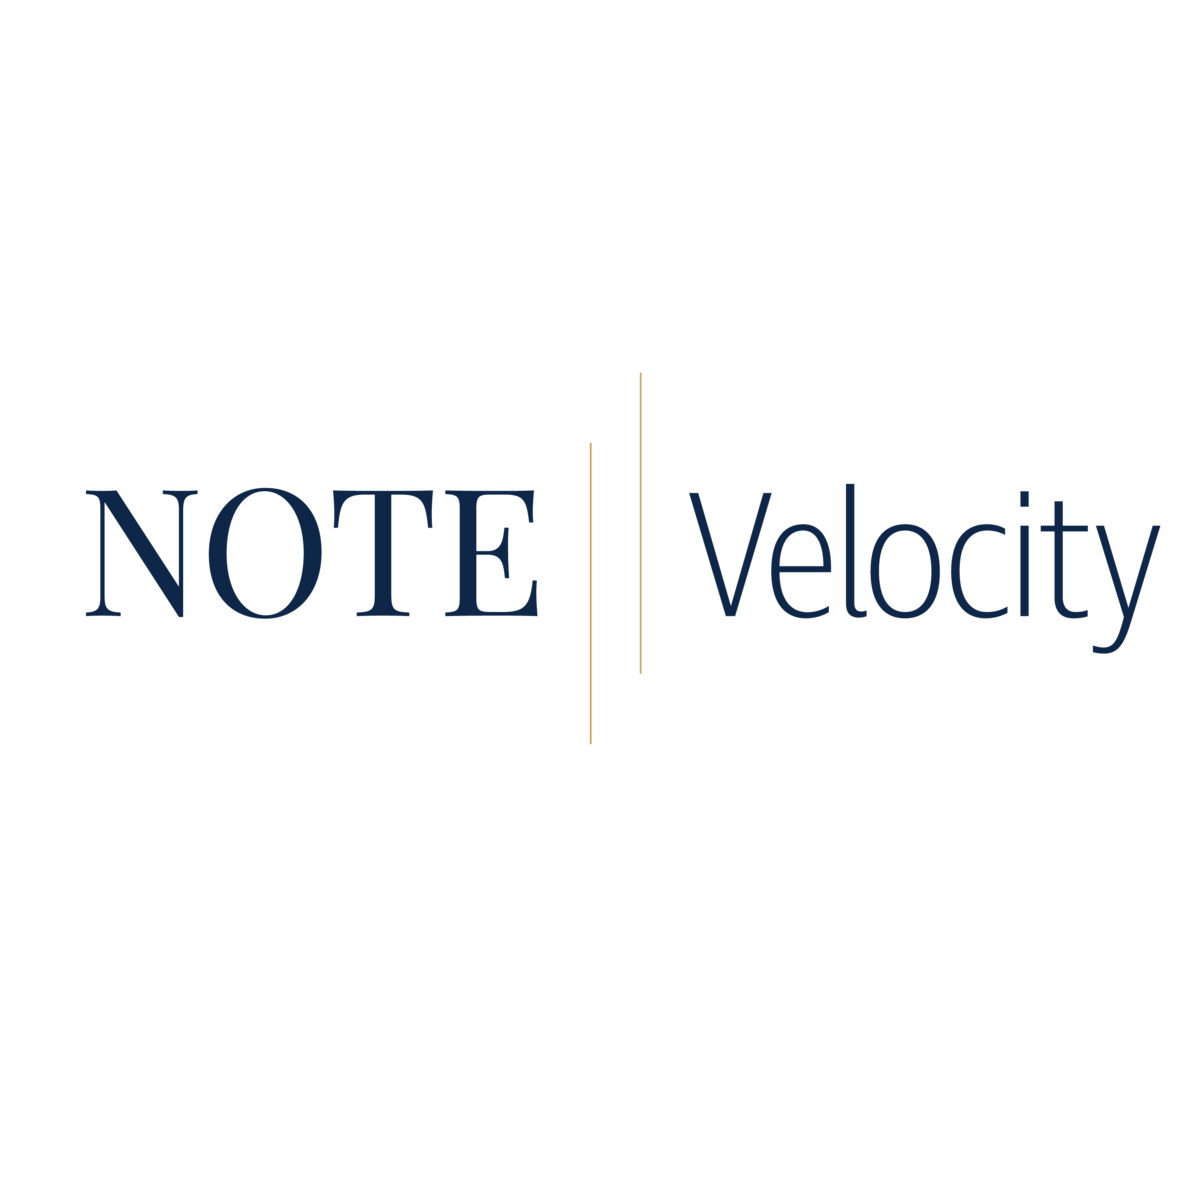 note velocity branding_primary logo